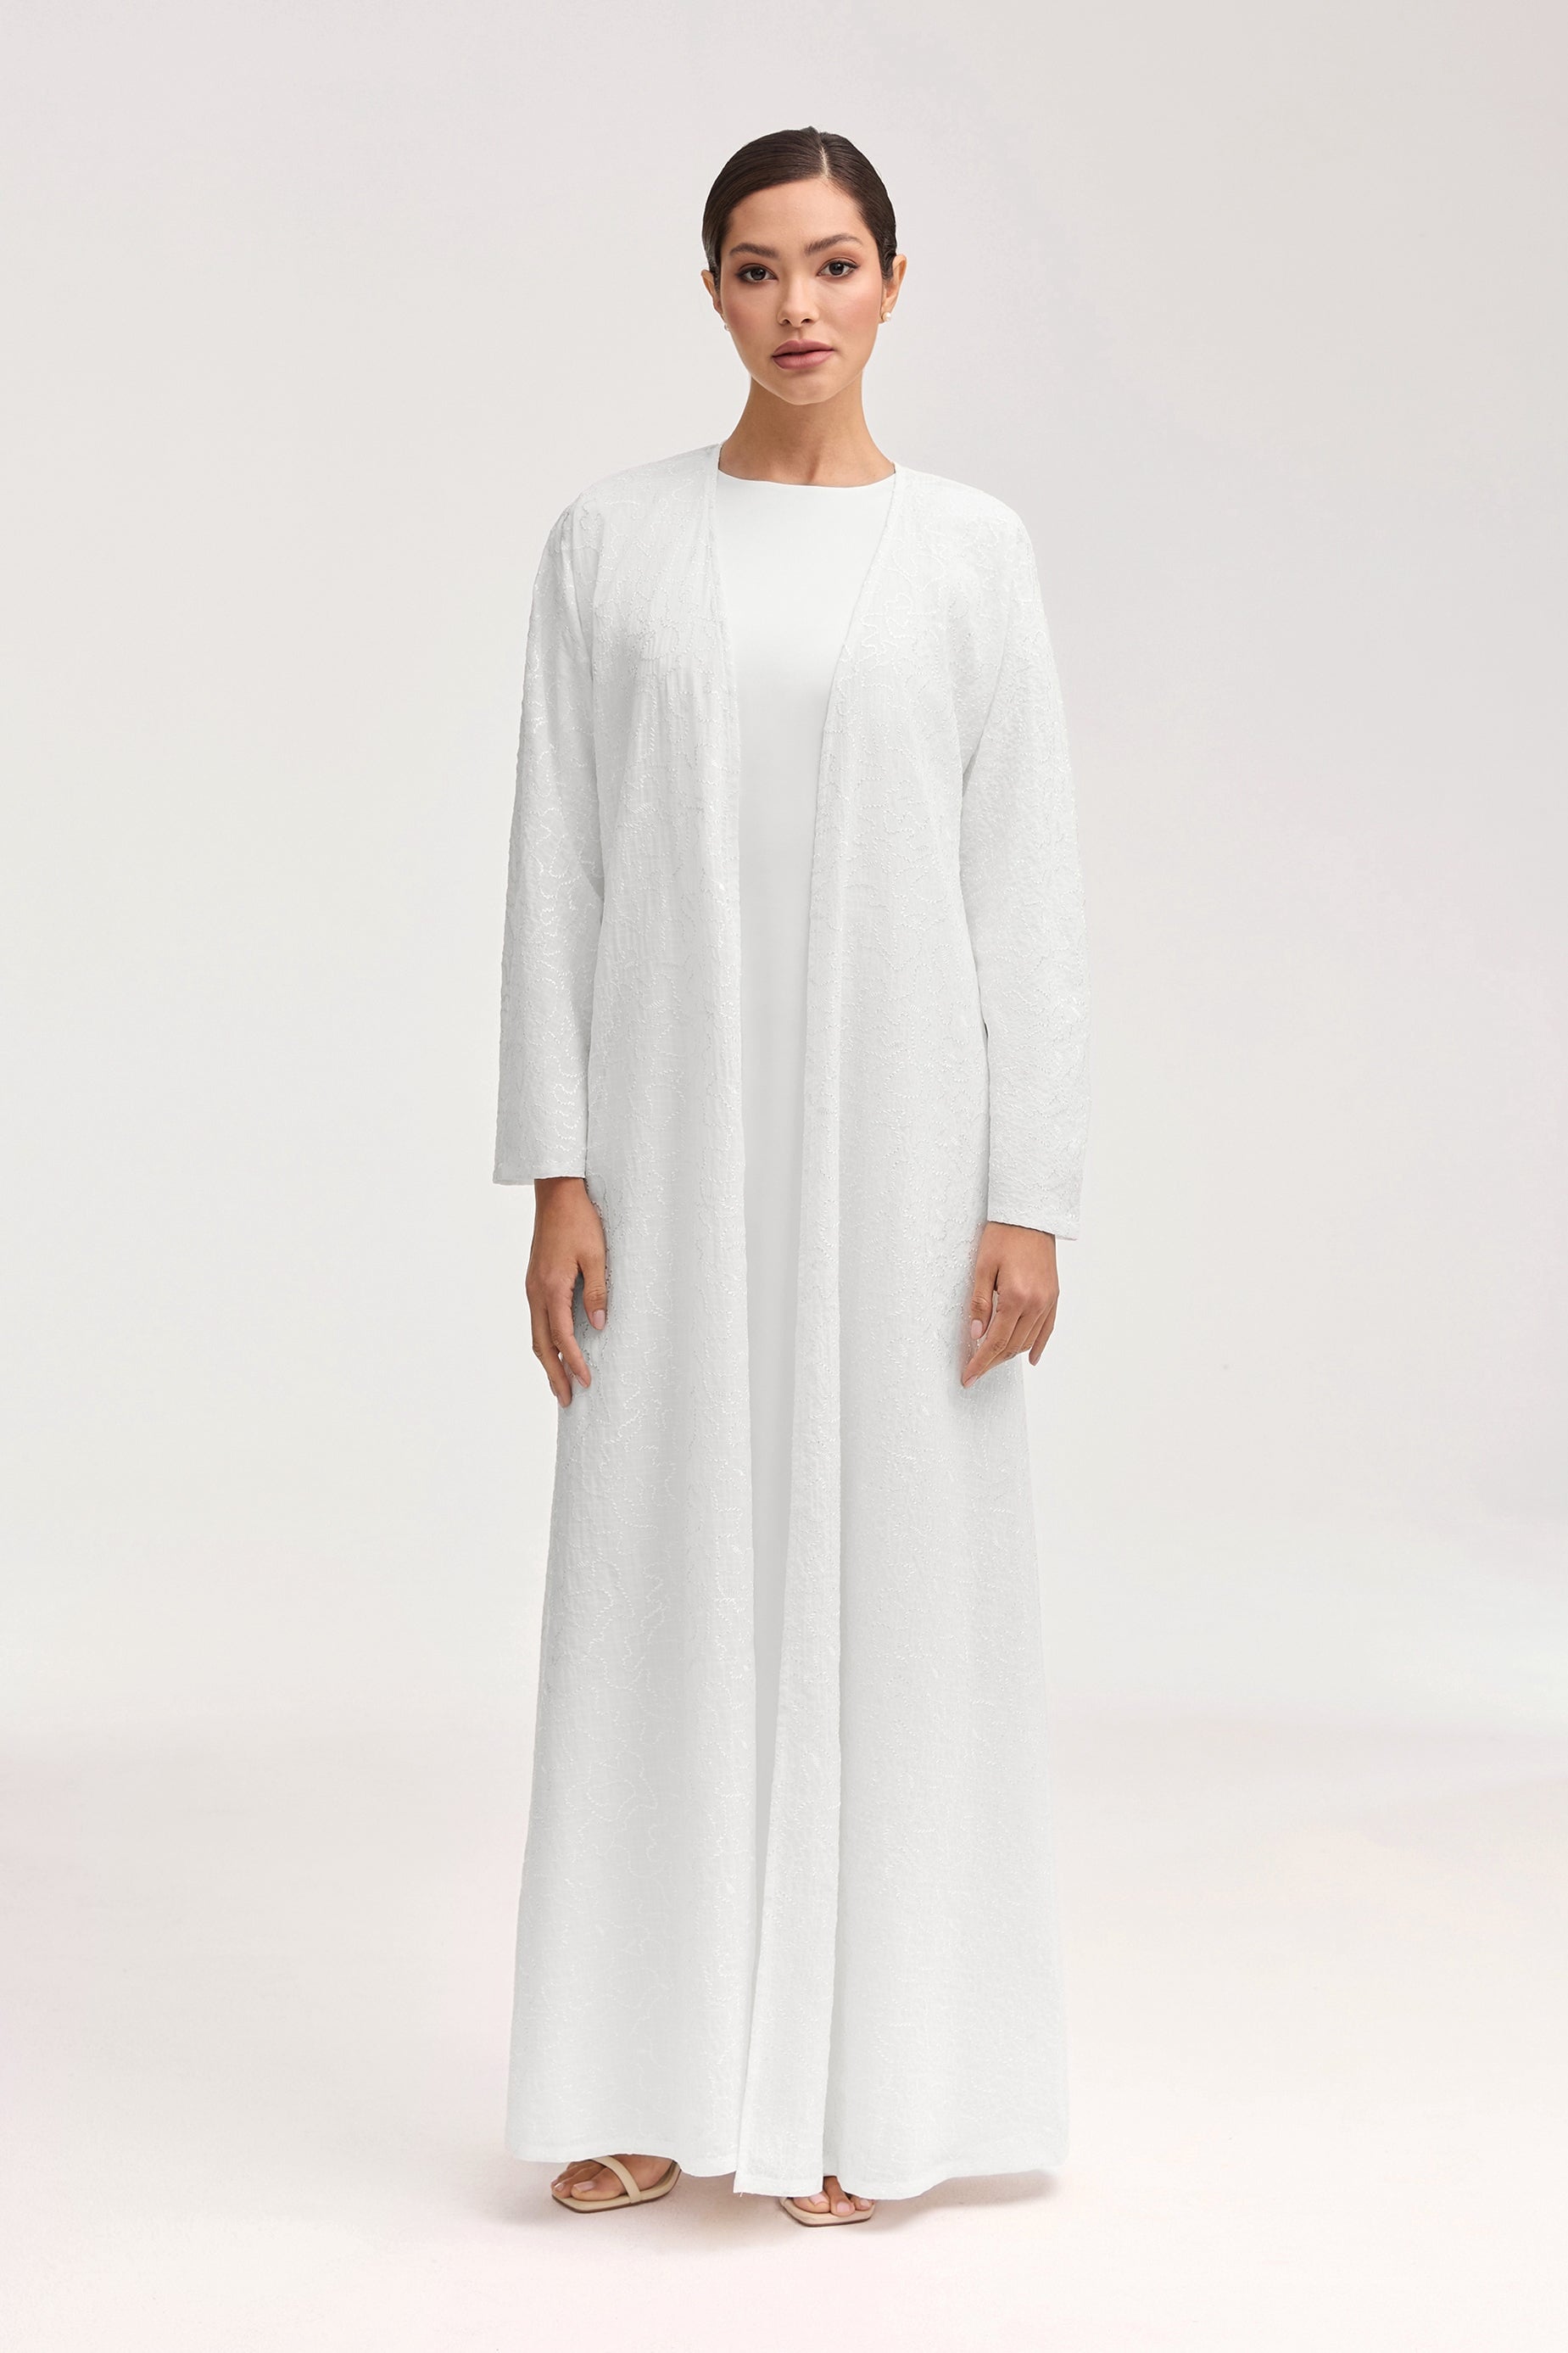 Malak Embroidered Open Abaya - White Clothing Veiled 